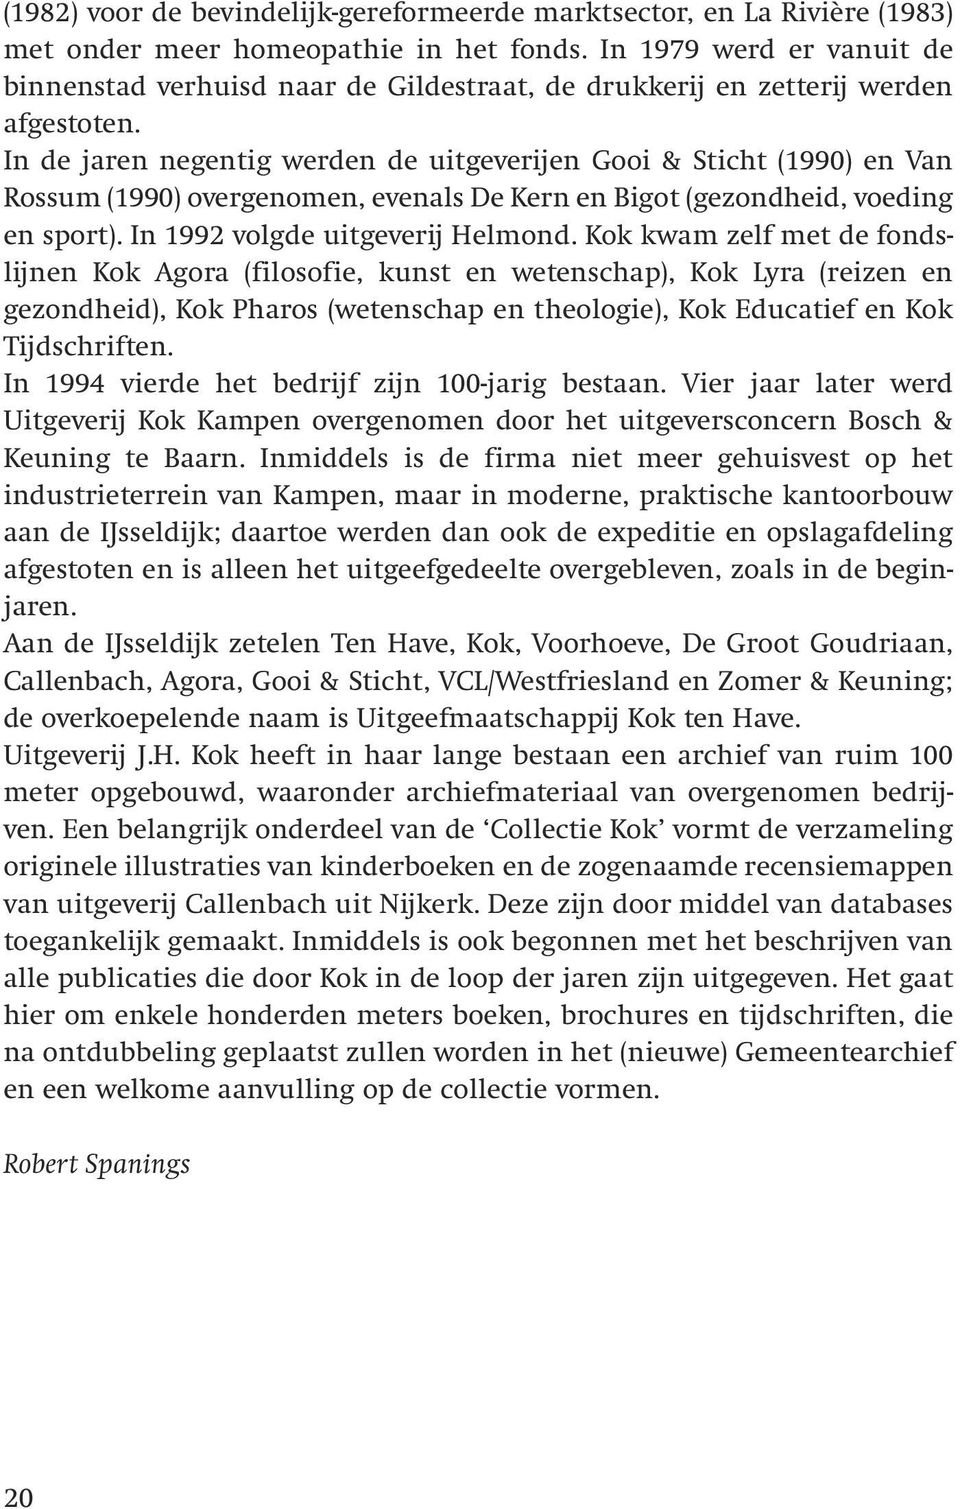 In de jaren negentig werden de uitgeverijen Gooi & Sticht (1990) en Van Rossum (1990) overgenomen, evenals De Kern en Bigot (gezondheid, voeding en sport). In 1992 volgde uitgeverij Helmond.